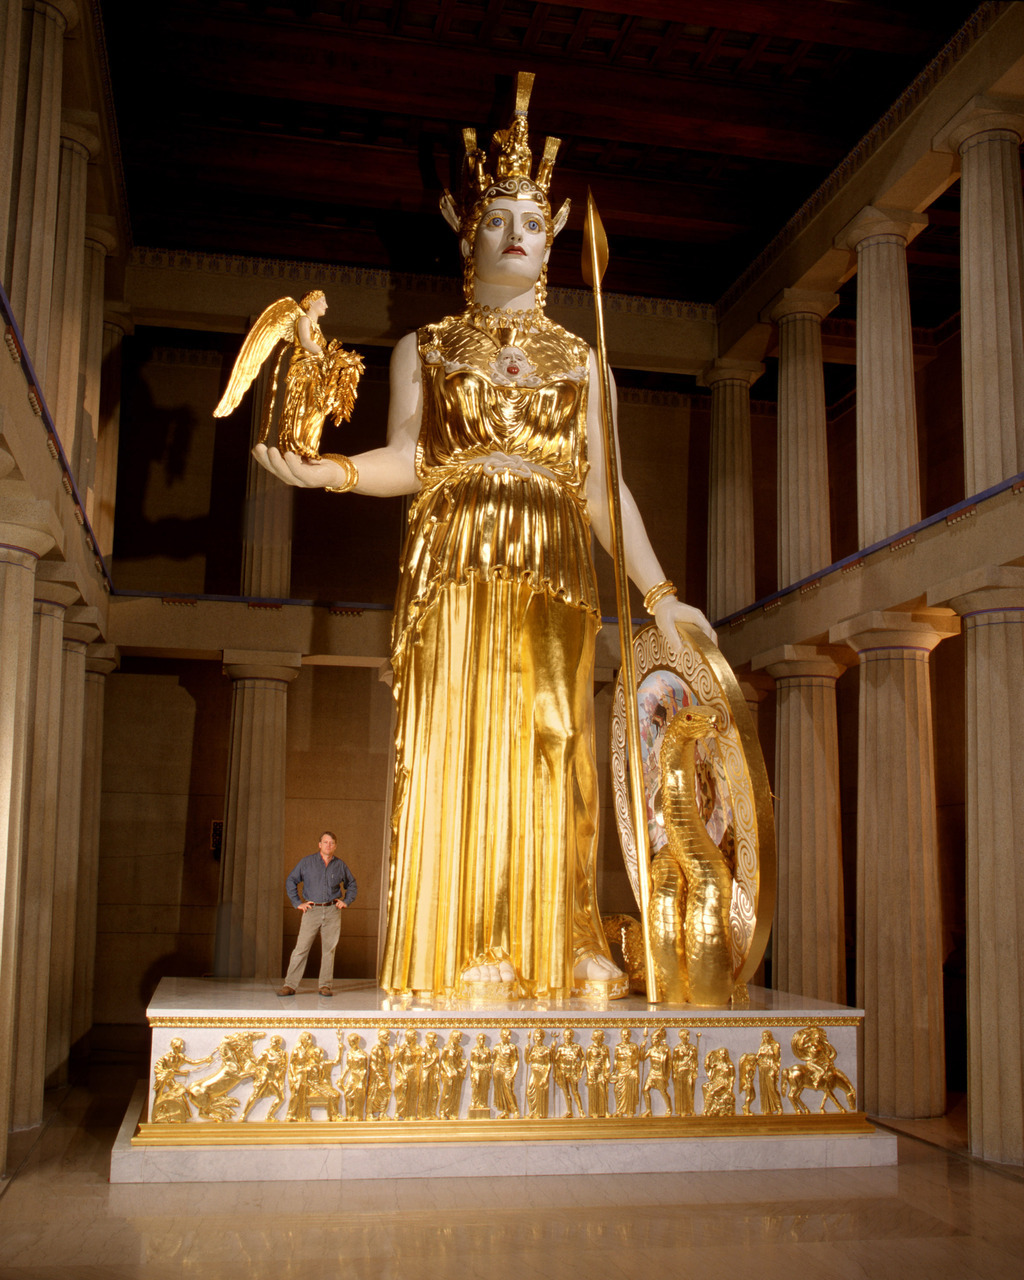 Reconstruction of Phidias's <em>Athena Parthenos</em>.